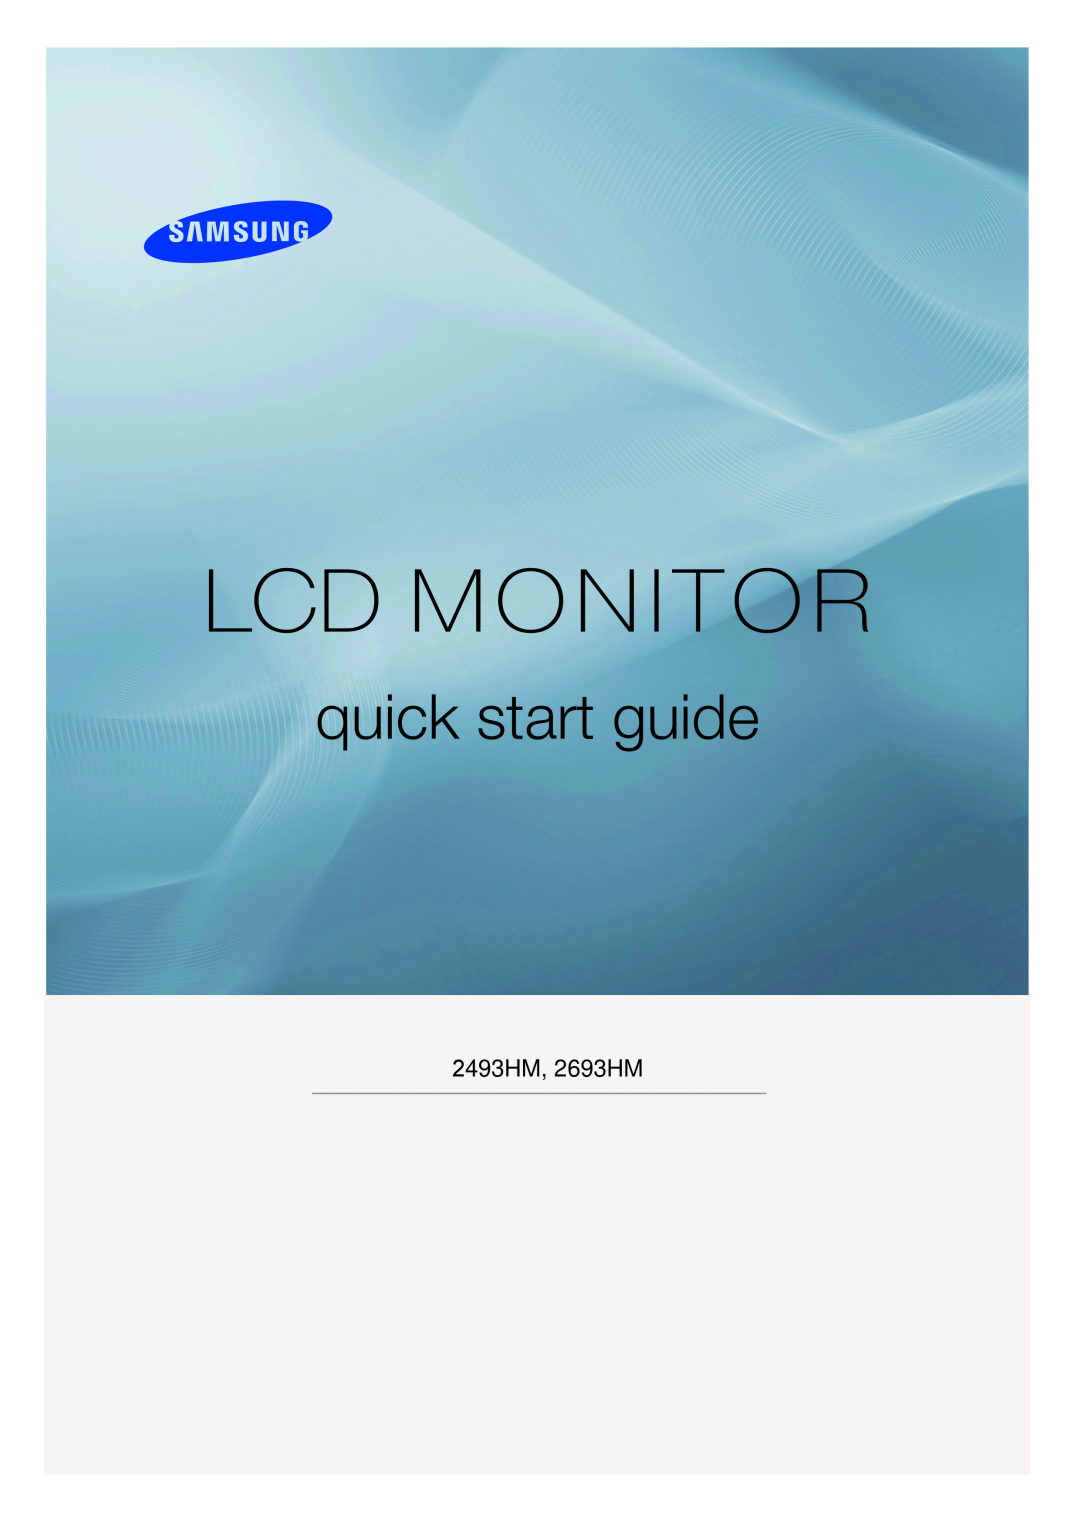 Samsung LS24KIEEFV/EDC, LS26KIERBV/EDC, LS24KIERBQ/EDC, LS32BHLNS/EDC manual Lcd Monitor, quick start guide, 2493HM, 2693HM 